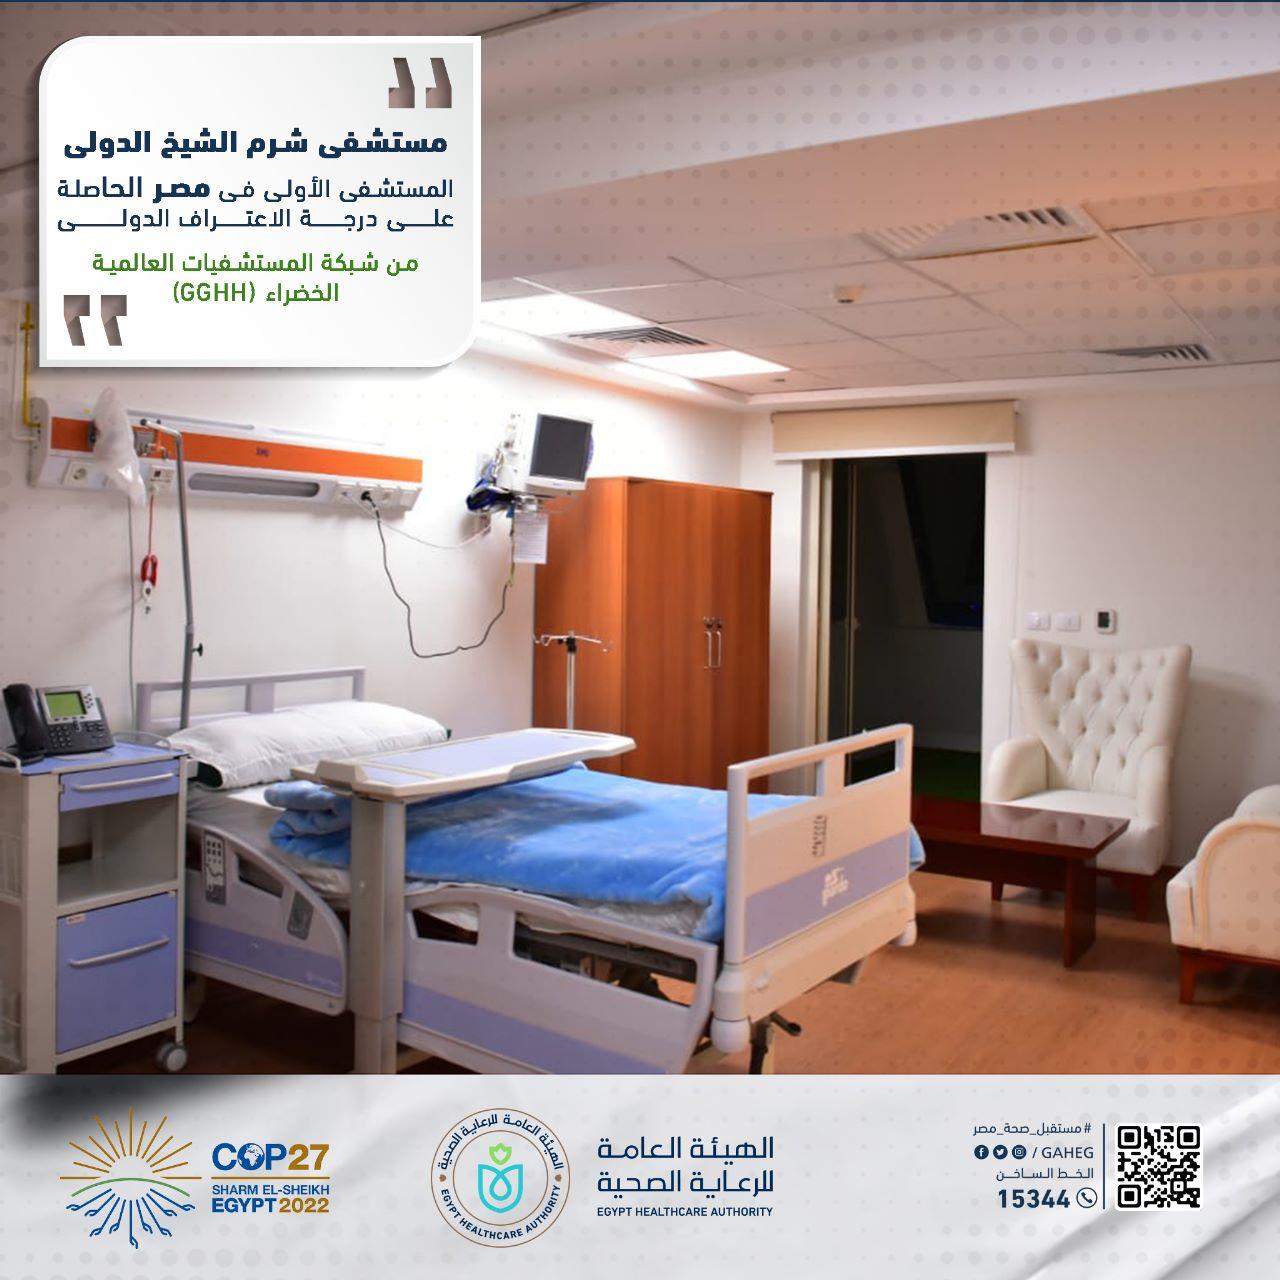 هيئة الرعاية الصحية تستعرض تجهيزات ««مستشفى شرم الشيخ الدولي»